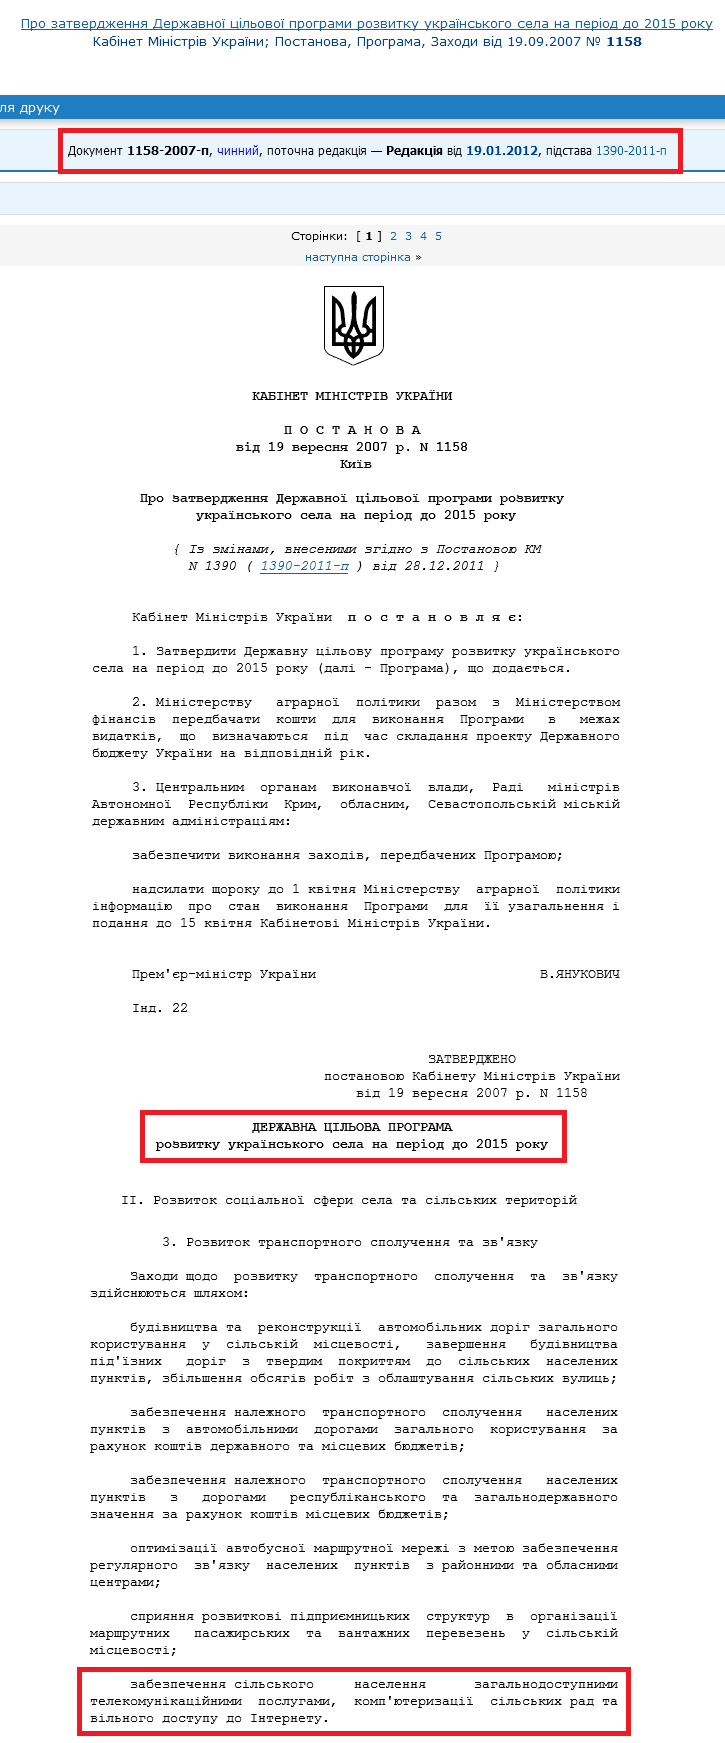 http://zakon4.rada.gov.ua/laws/show/1158-2007-%D0%BF